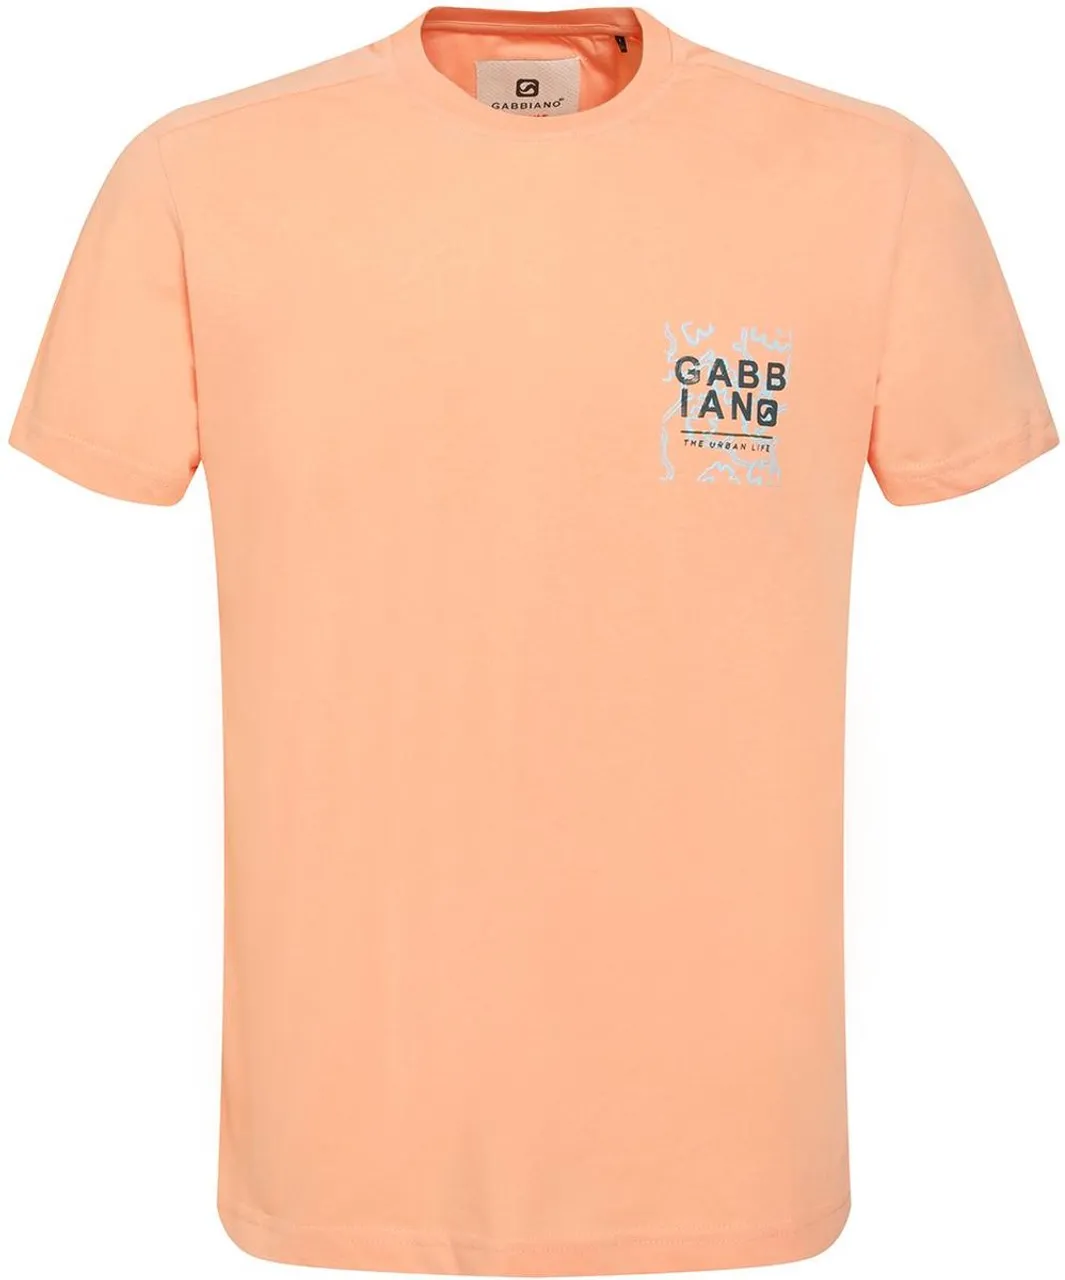 Gabbiano T-shirt Jersey T Shirt Met Print 154526 972 Soft Peach Mannen